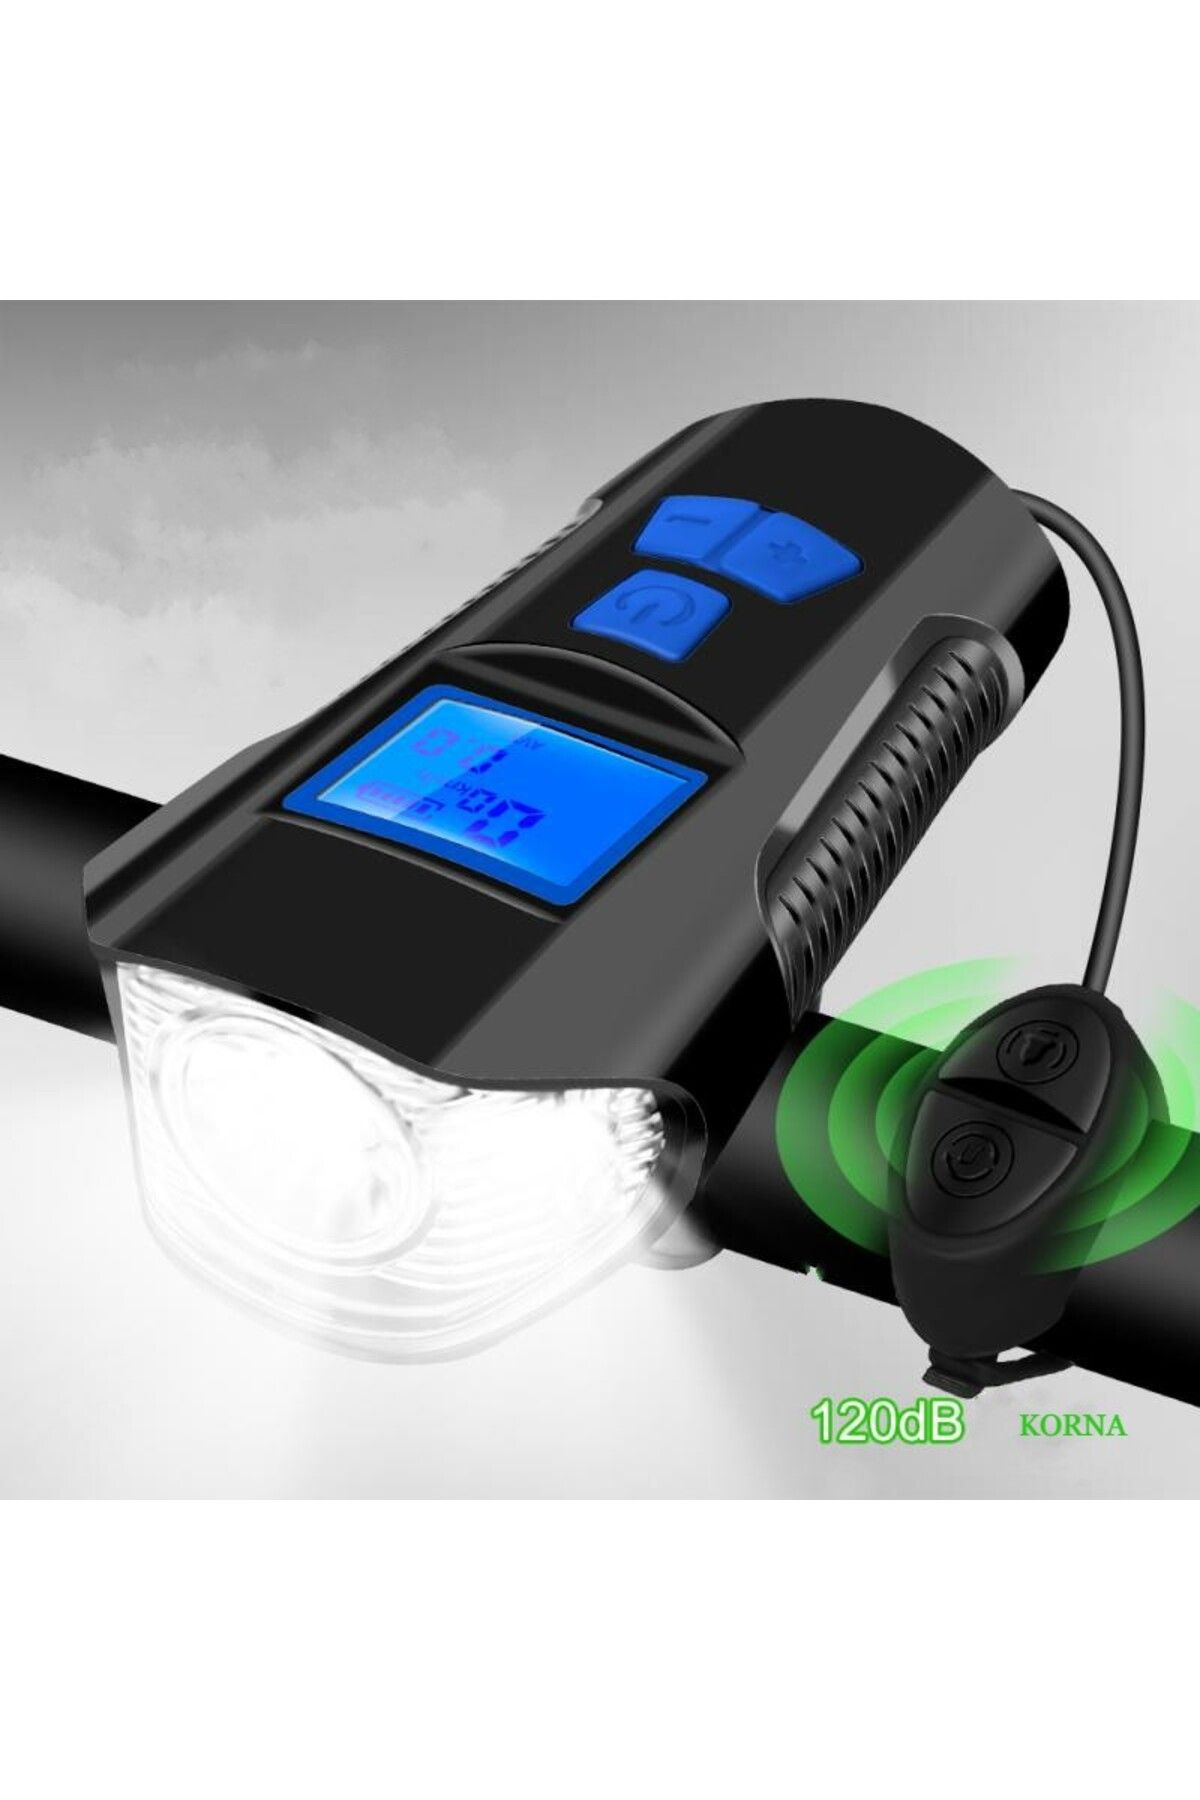 IntersTech Bisiklet LCD Hız Göstergesi Su Geçirmez Şarjlı Led ışık KM Ekran Kronometre Bisiklet Kornası feneri